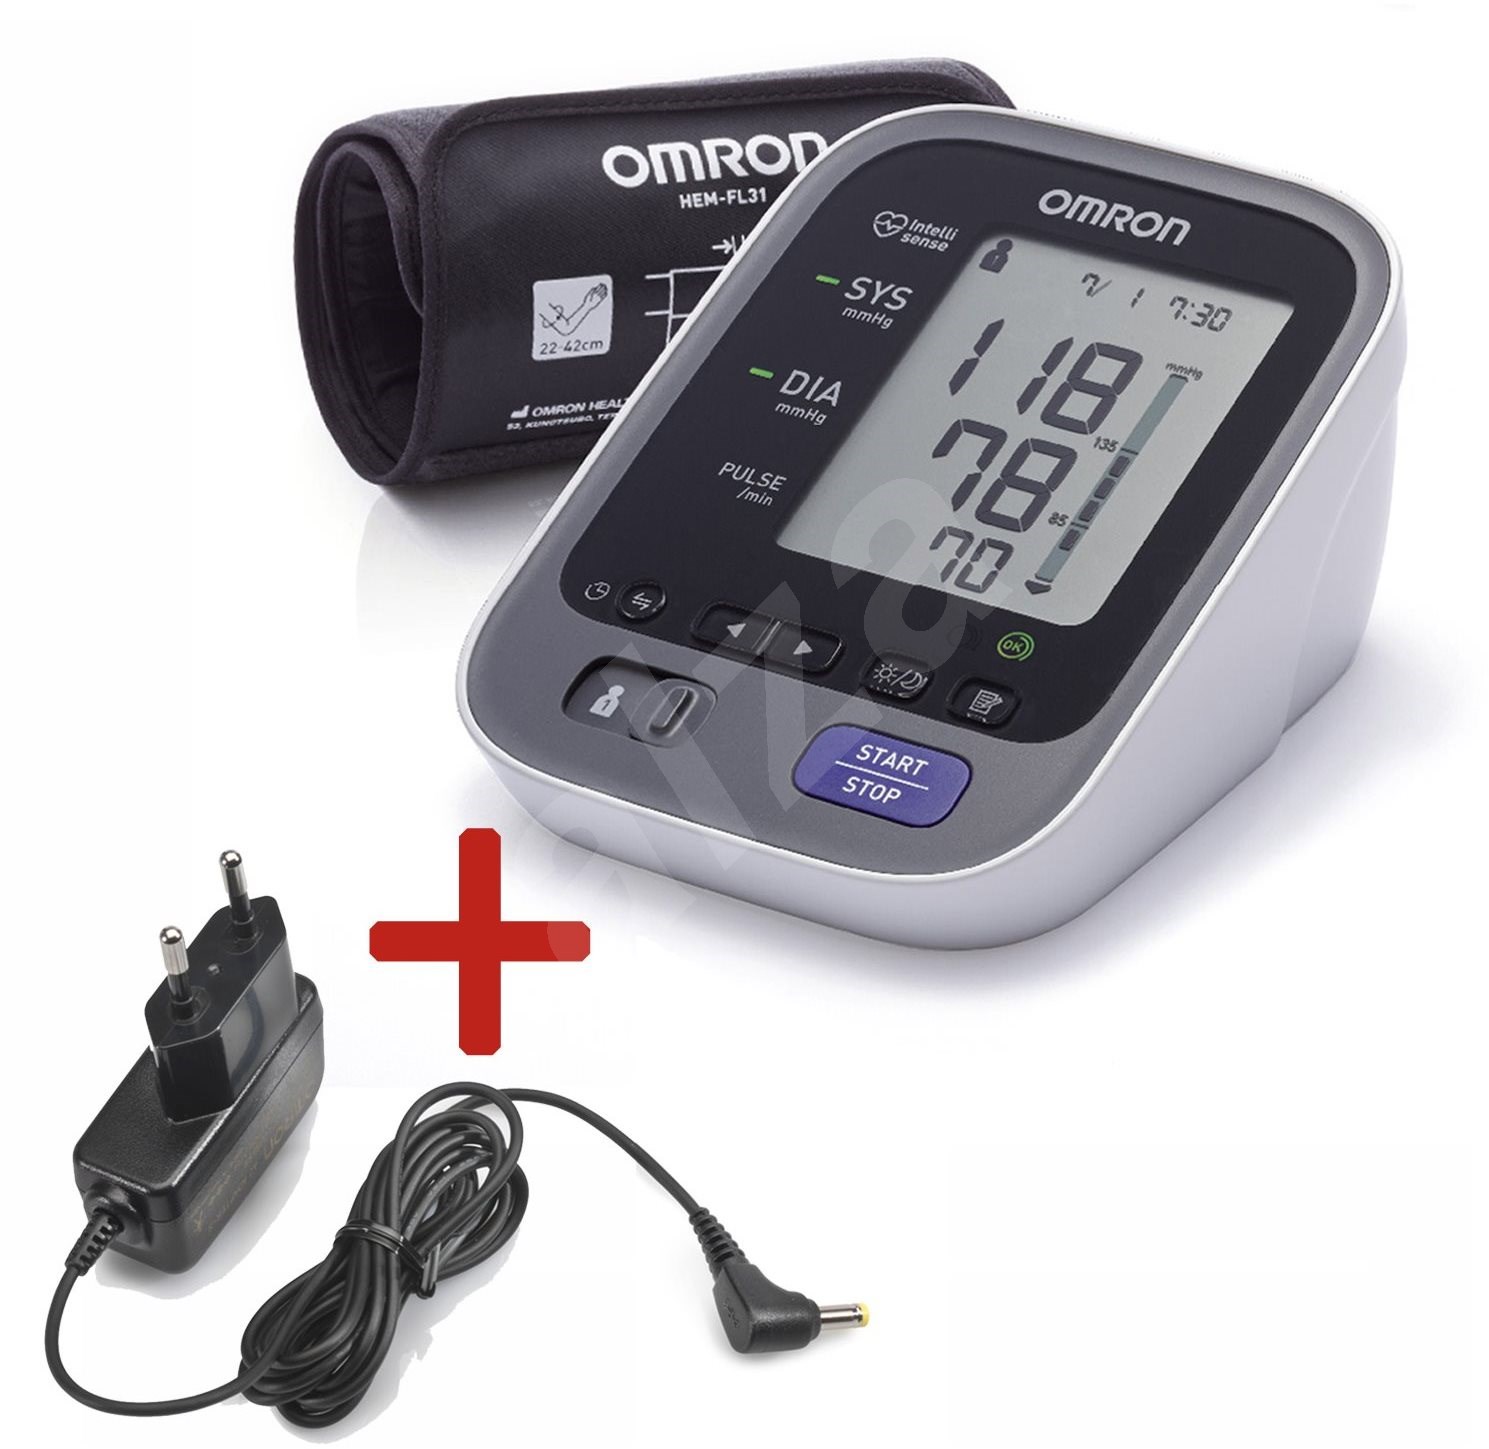 a legjobb vérnyomásmérő magas vérnyomás esetén